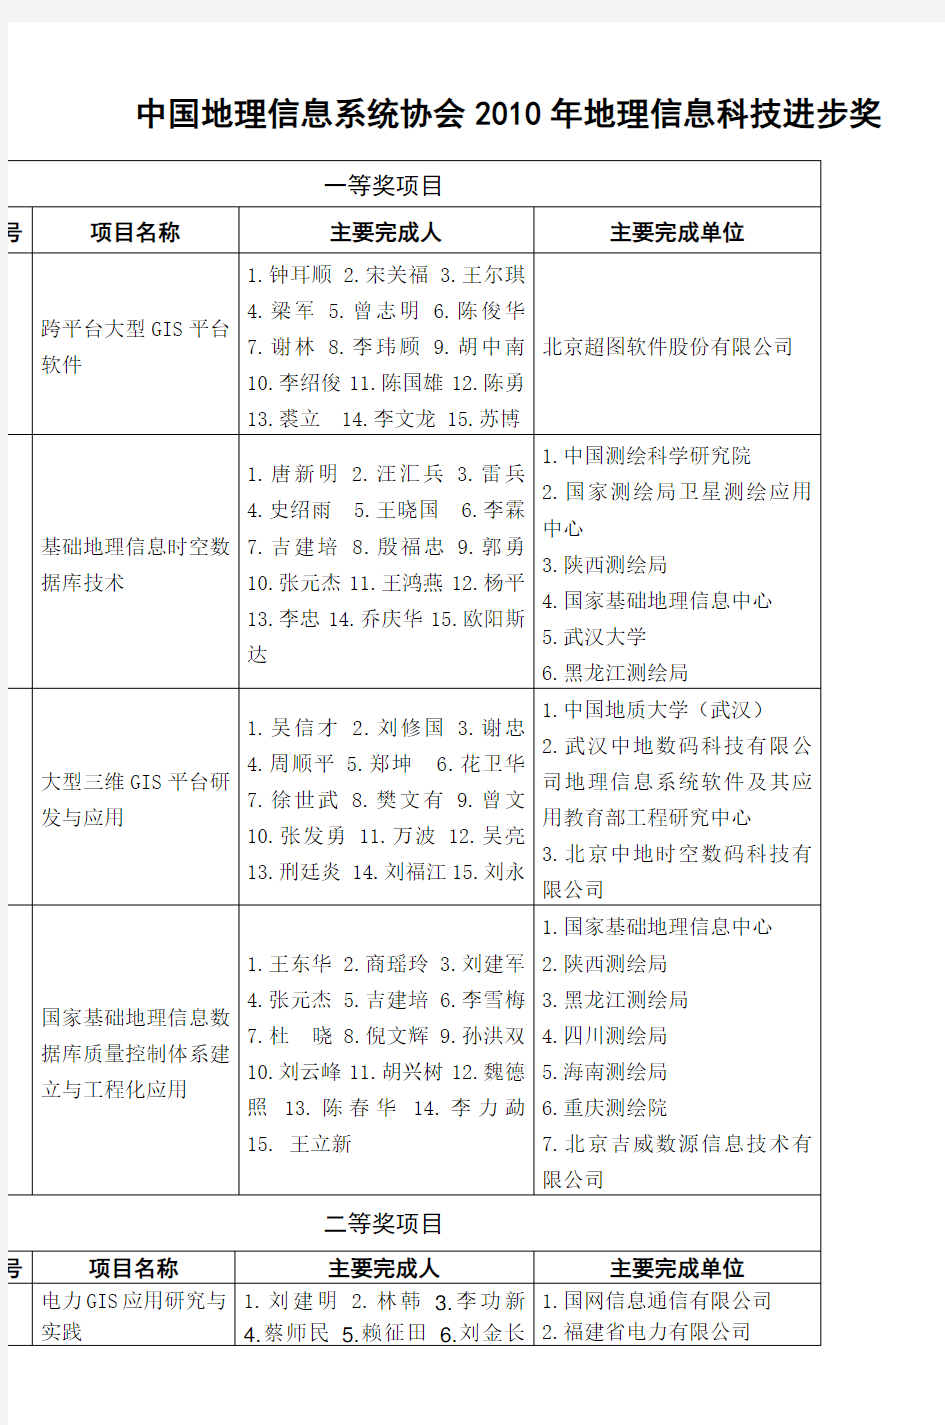 中国地理信息系统协会2010年地理信息科技进综述